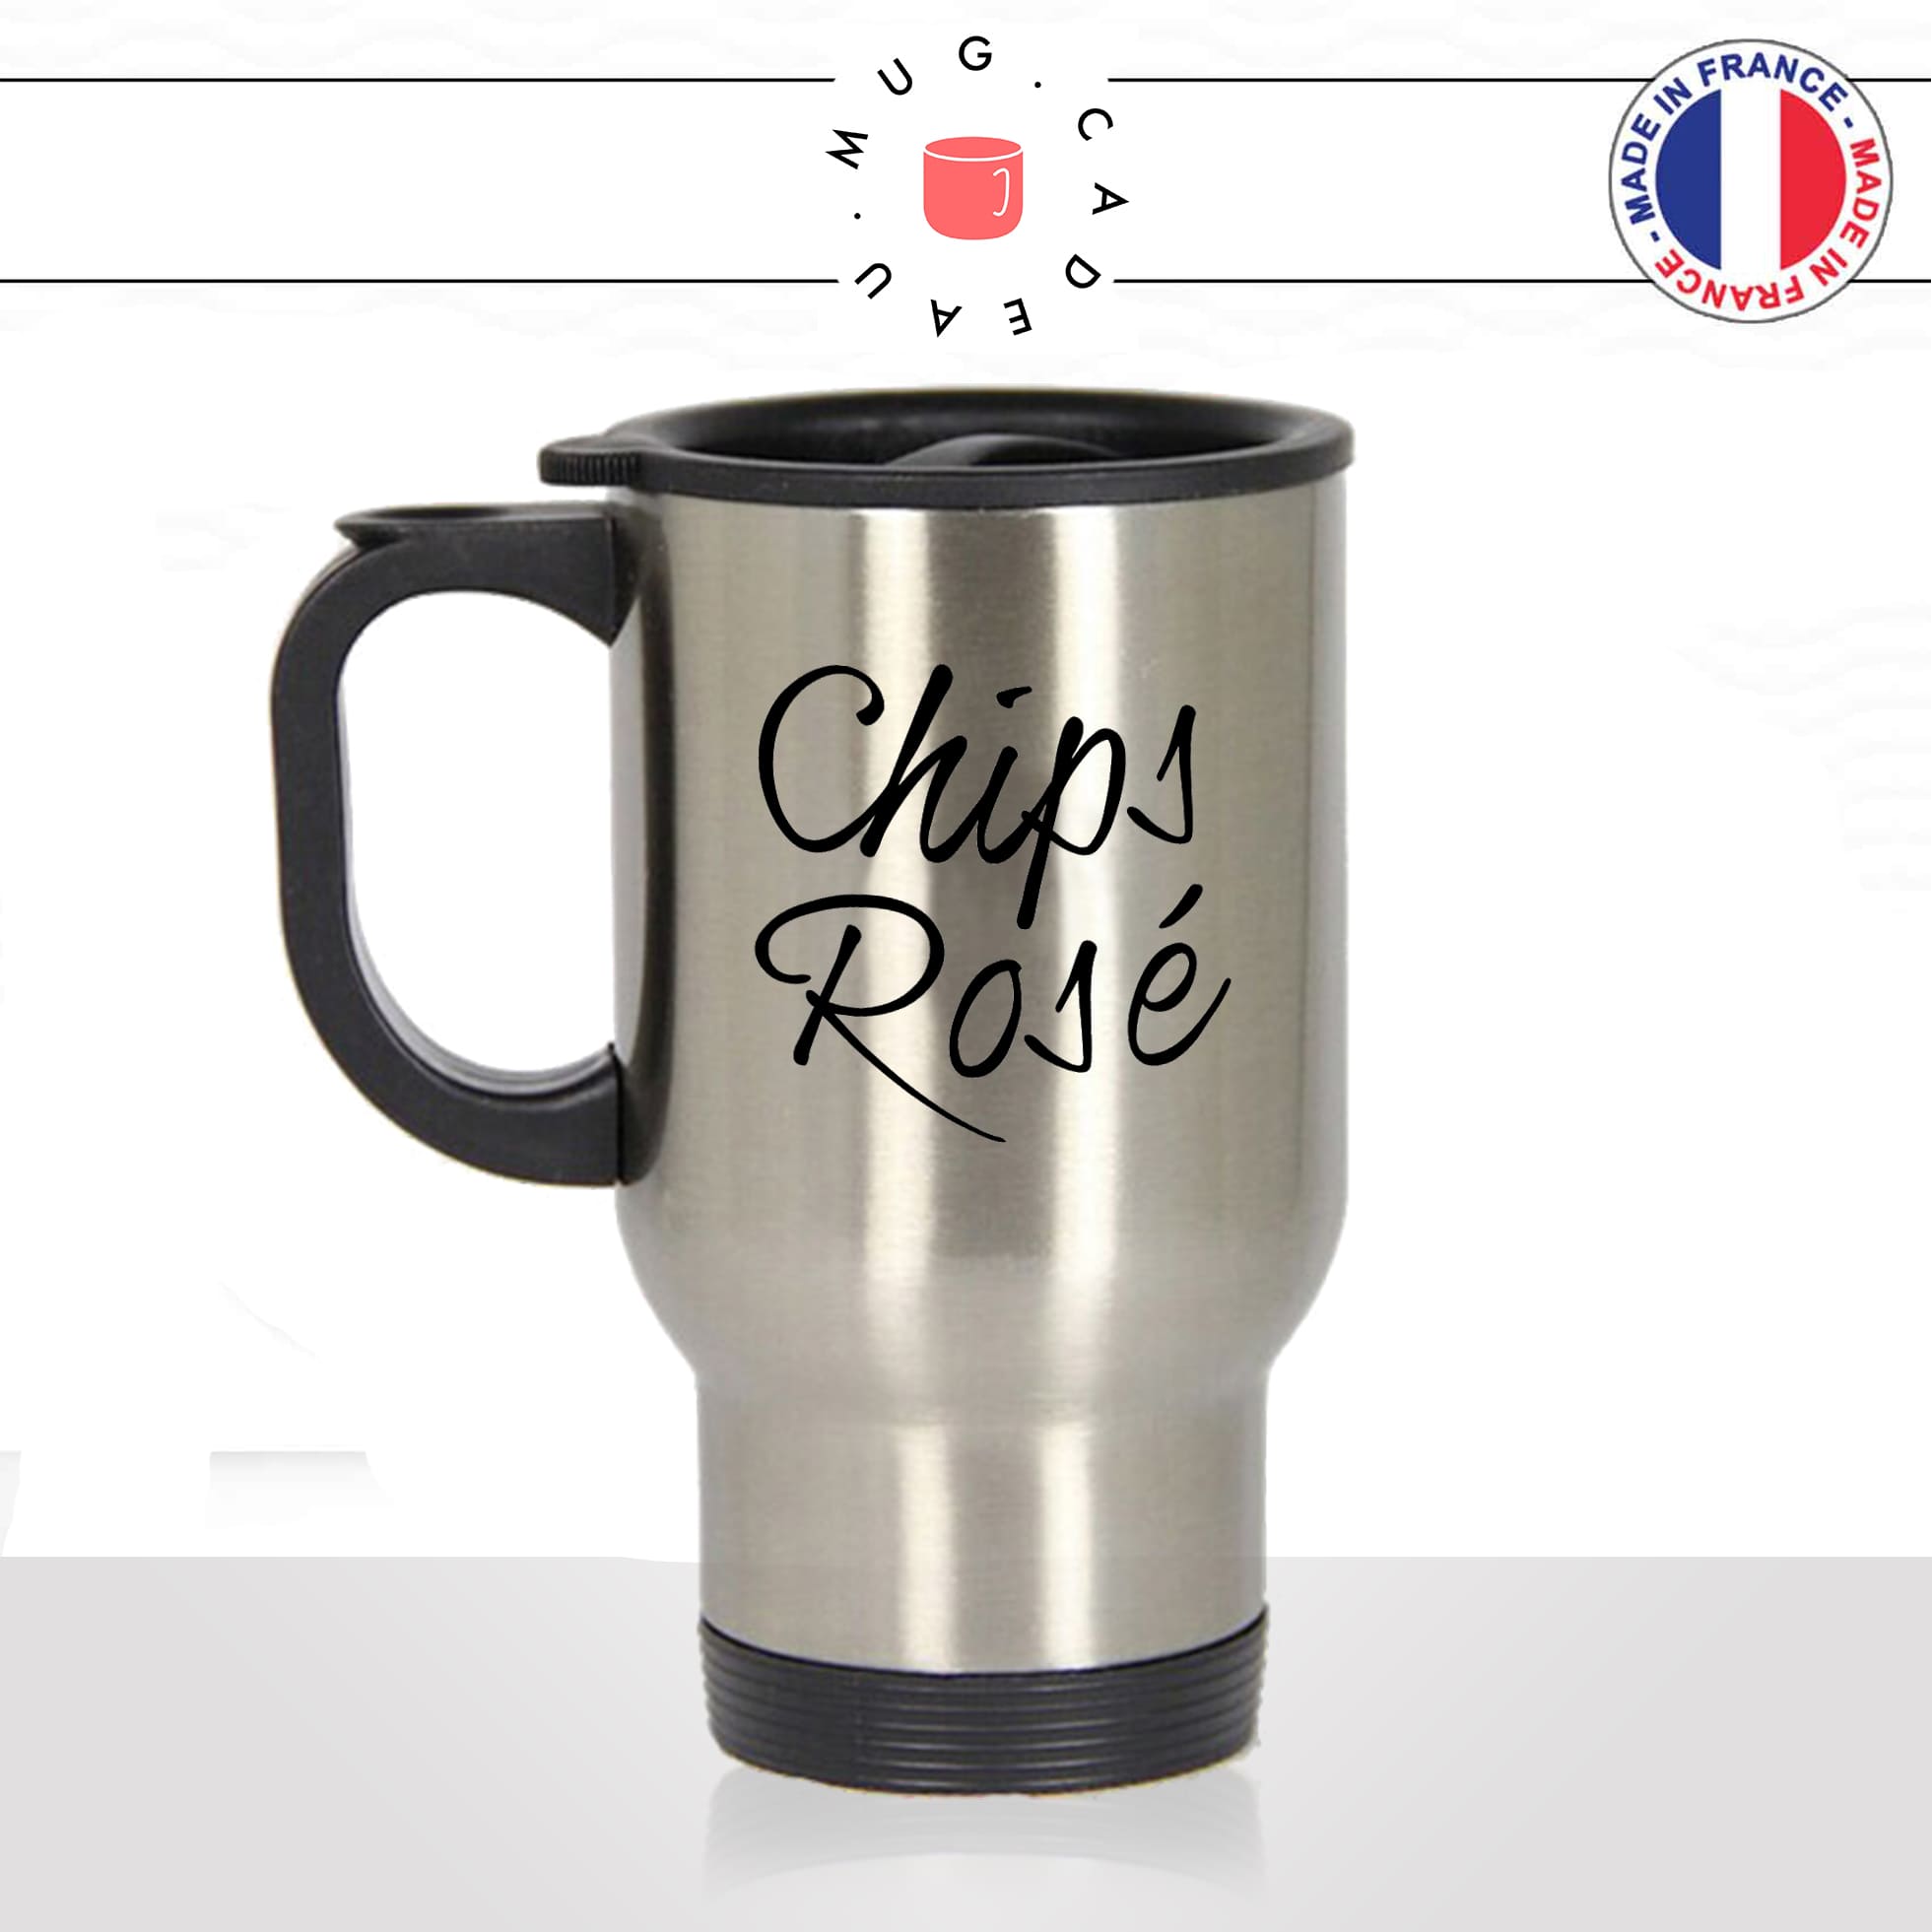 mug-tasse-thermos-isotherme-unique-chips-rosé-apéro-saucisson-vin-biere-homme-femme-humour-fun-cool-idée-cadeau-original-personnalisé